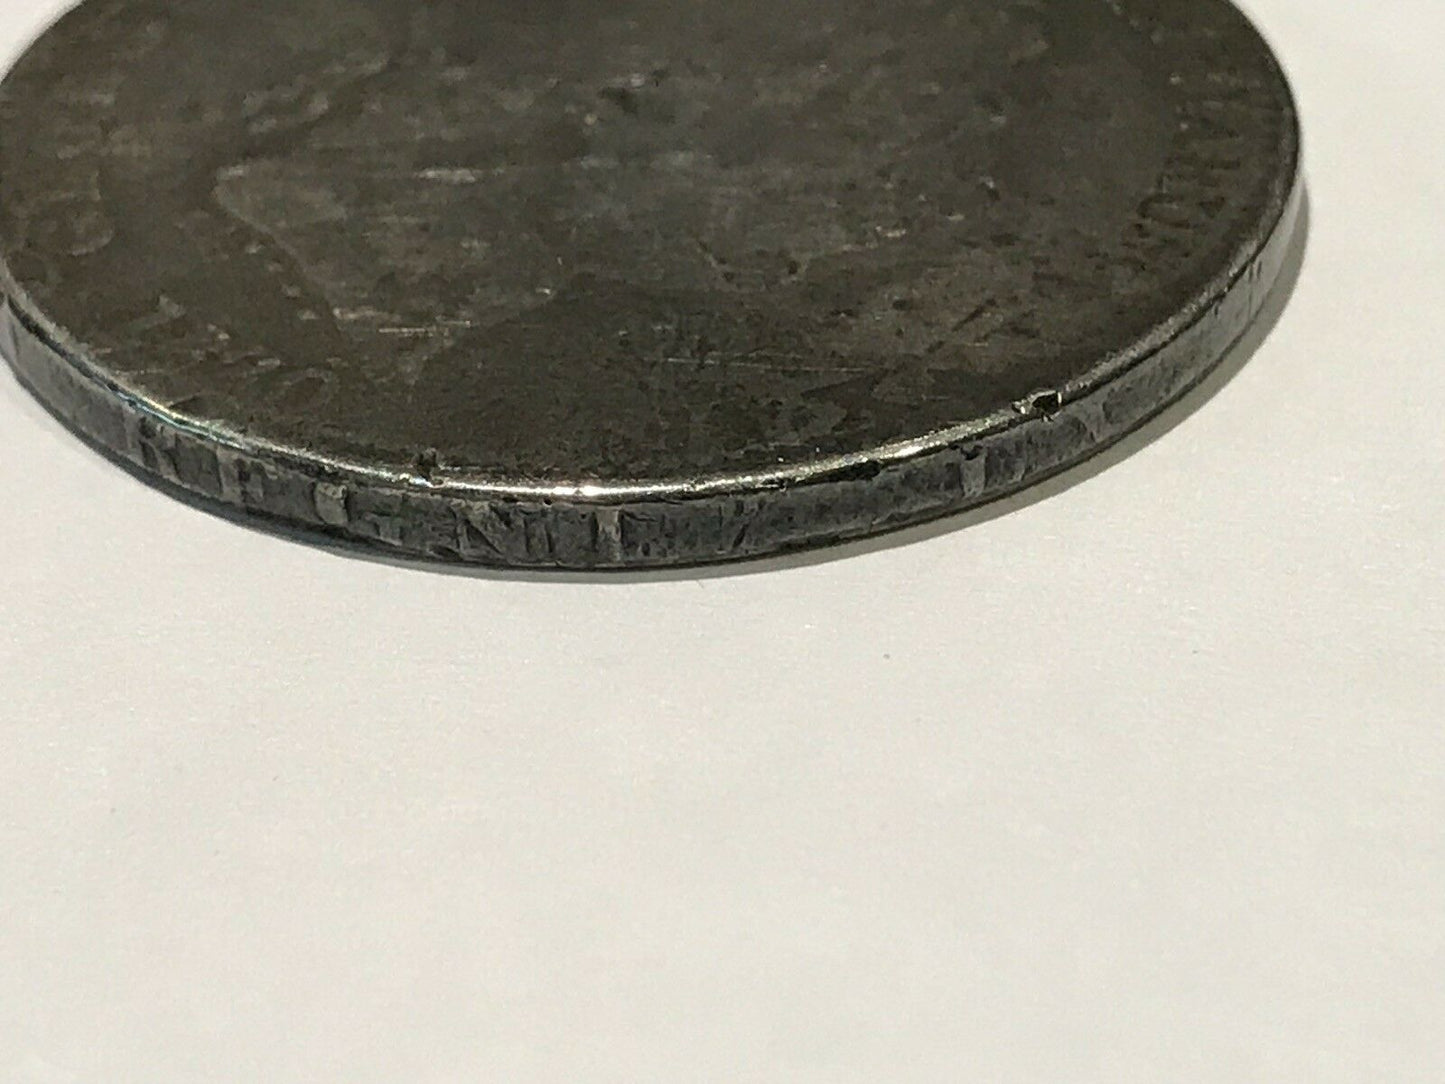 1820 Georgius III Silver Coin.